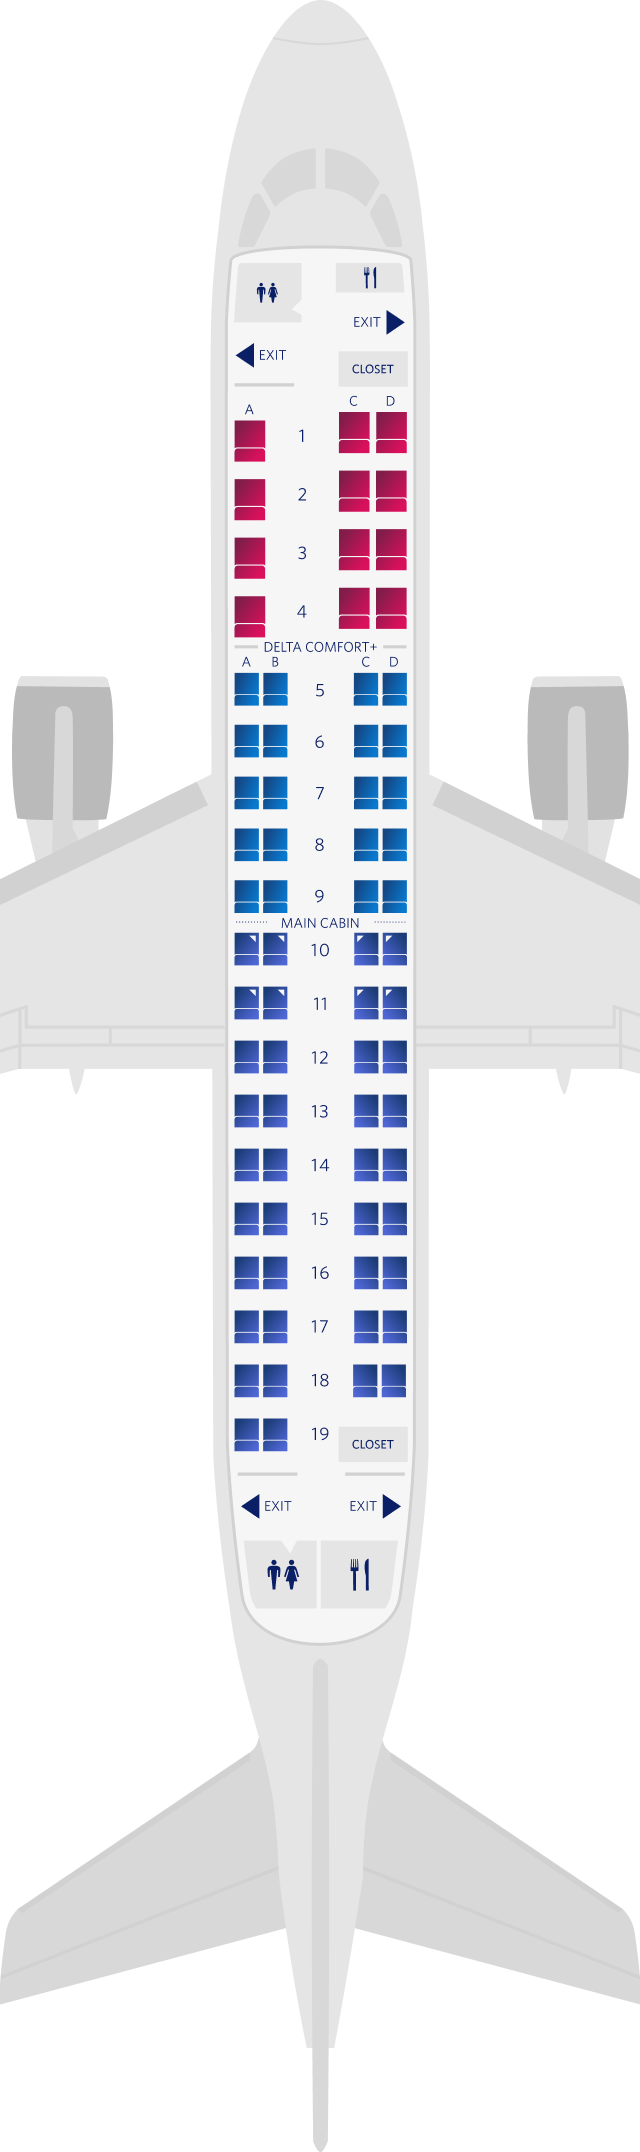 Embraer Erj Seat Maps Specs Amenities Delta Air Lines